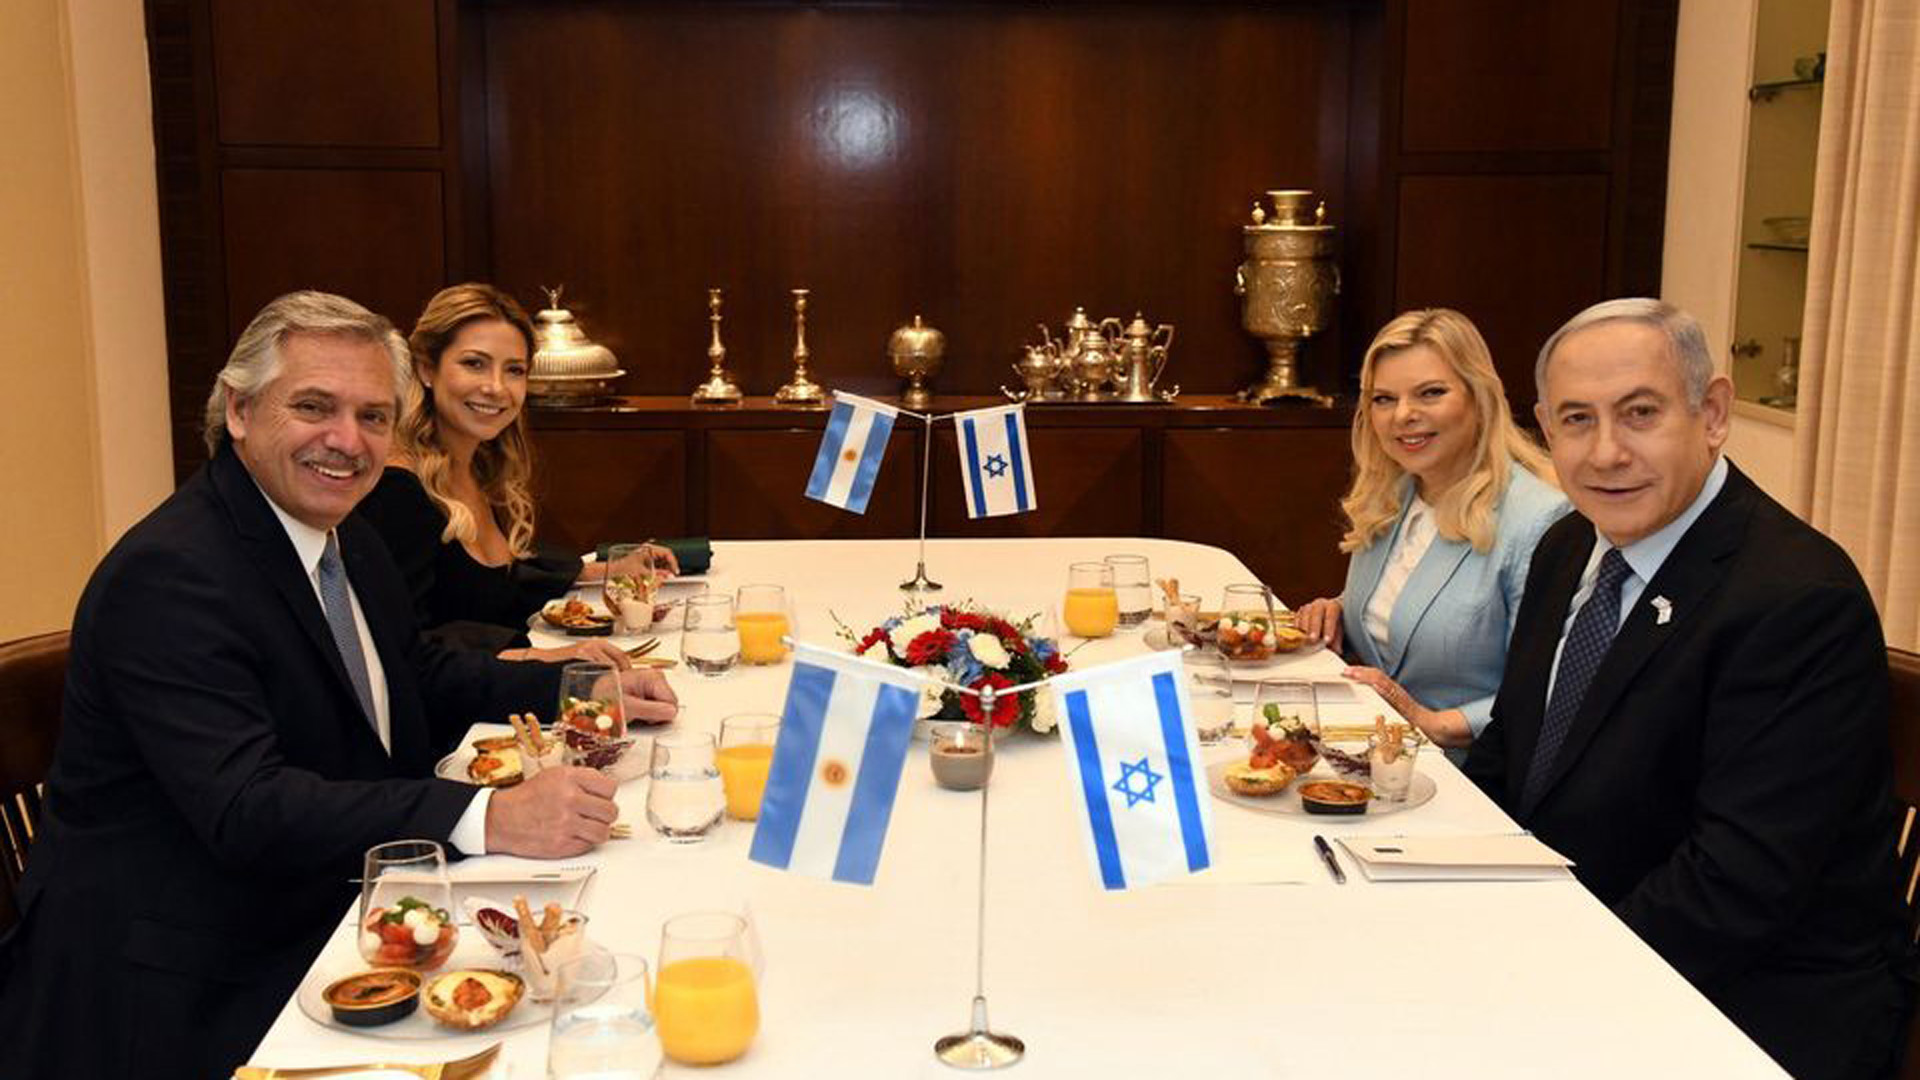 El Primer Ministro Netanyahu y su esposa Sara junto al presidente Fernández y la primera dama Fabiola Yañez en Israel.
El crédito de la imagen es de Haim Tzach (Oficina de Prensa Estado de Israel)